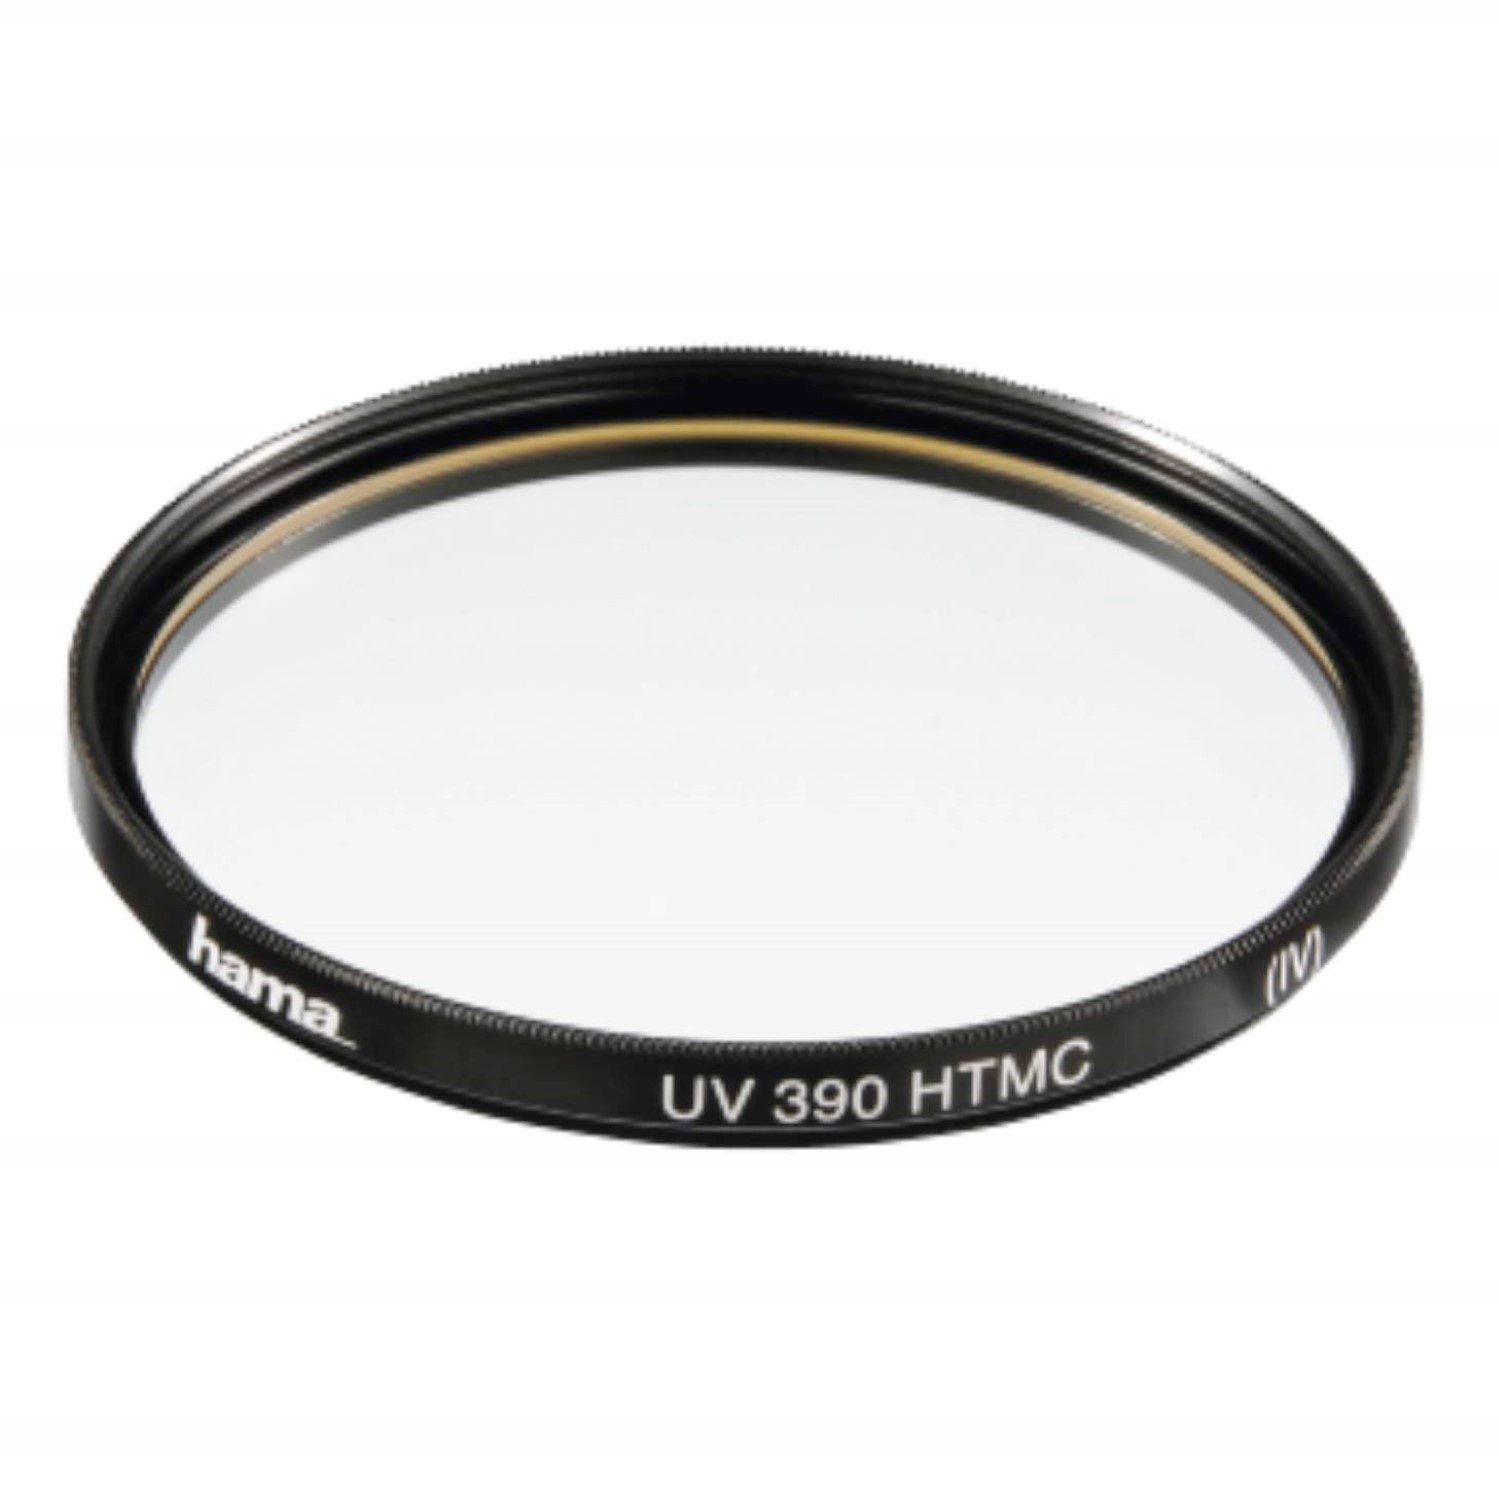 Hama UV-Filter 72mm HTMC vergütet Schwarz Objektivzubehör (Speer-Filter UV-Filter Kamera Objektiv DSLR SLR Systemkamera)